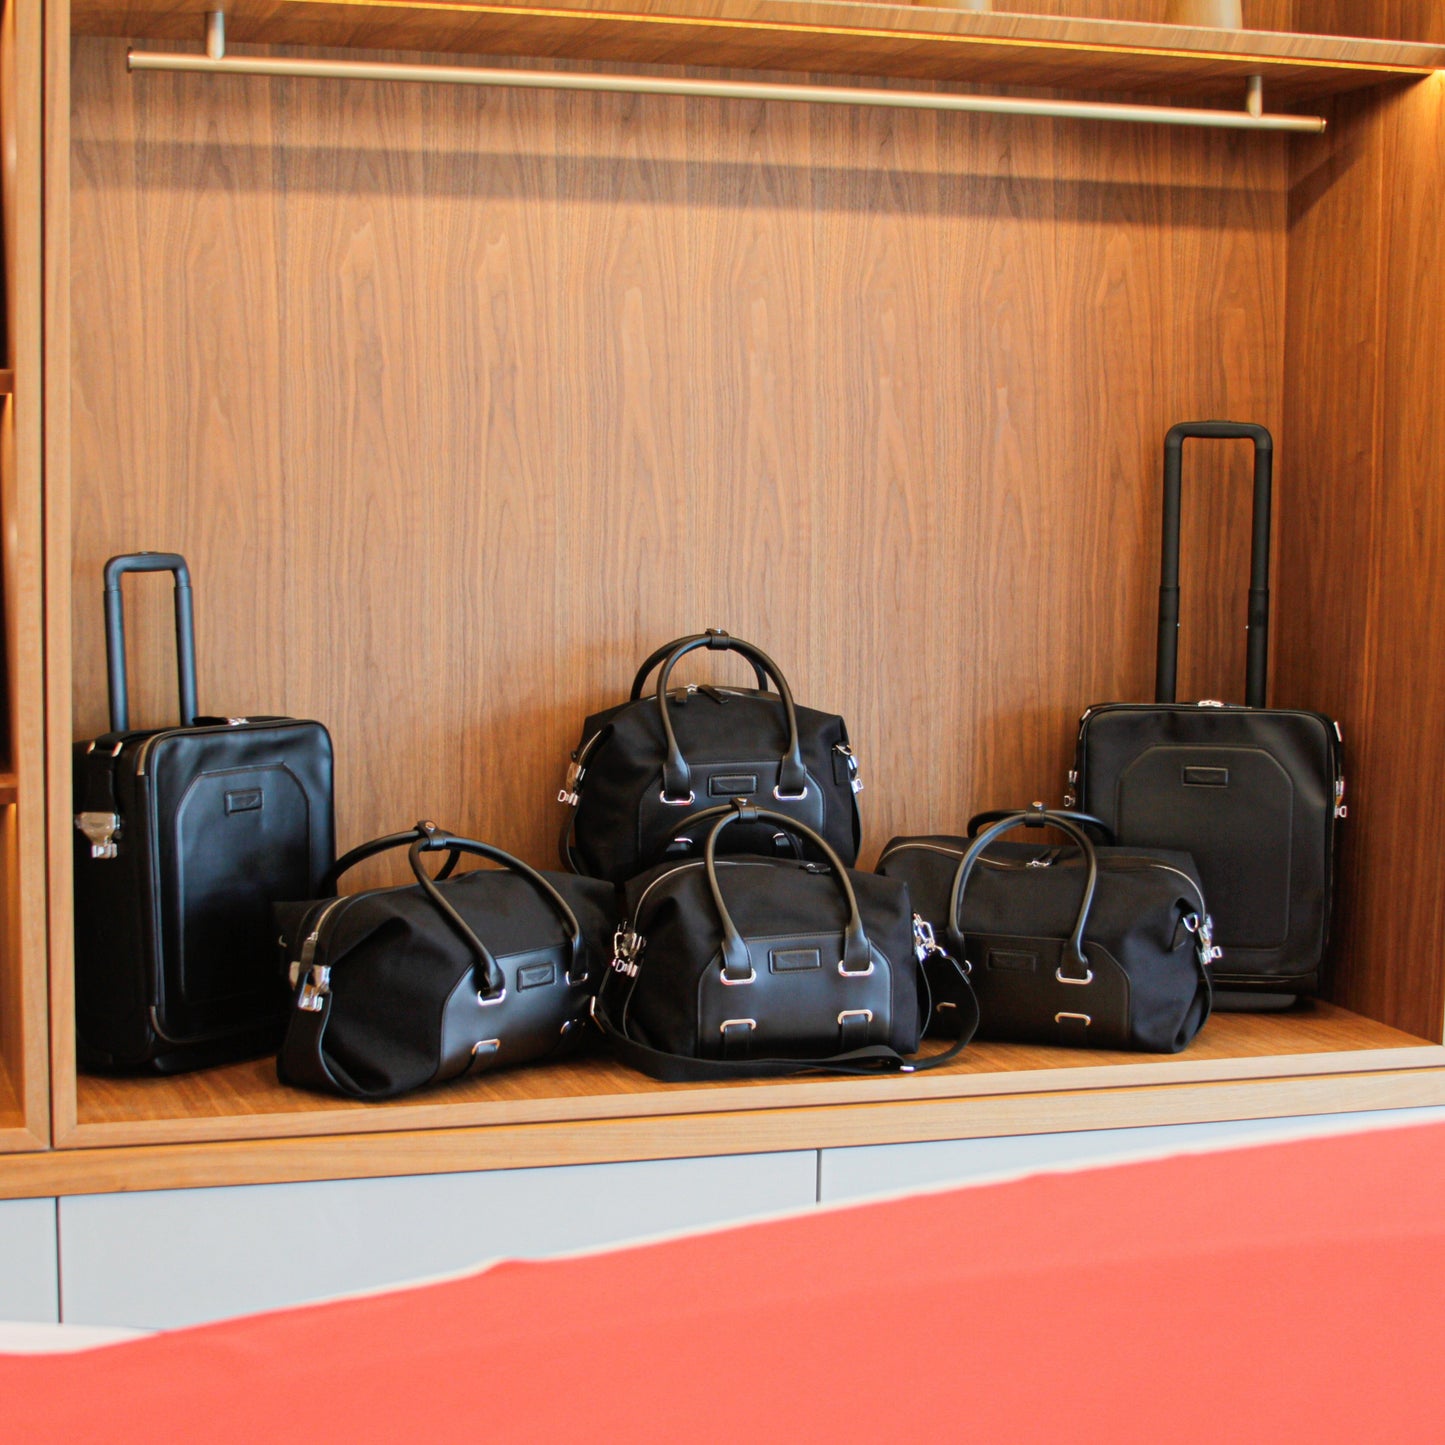 Aston Martin 6 Pieces Luggage Set